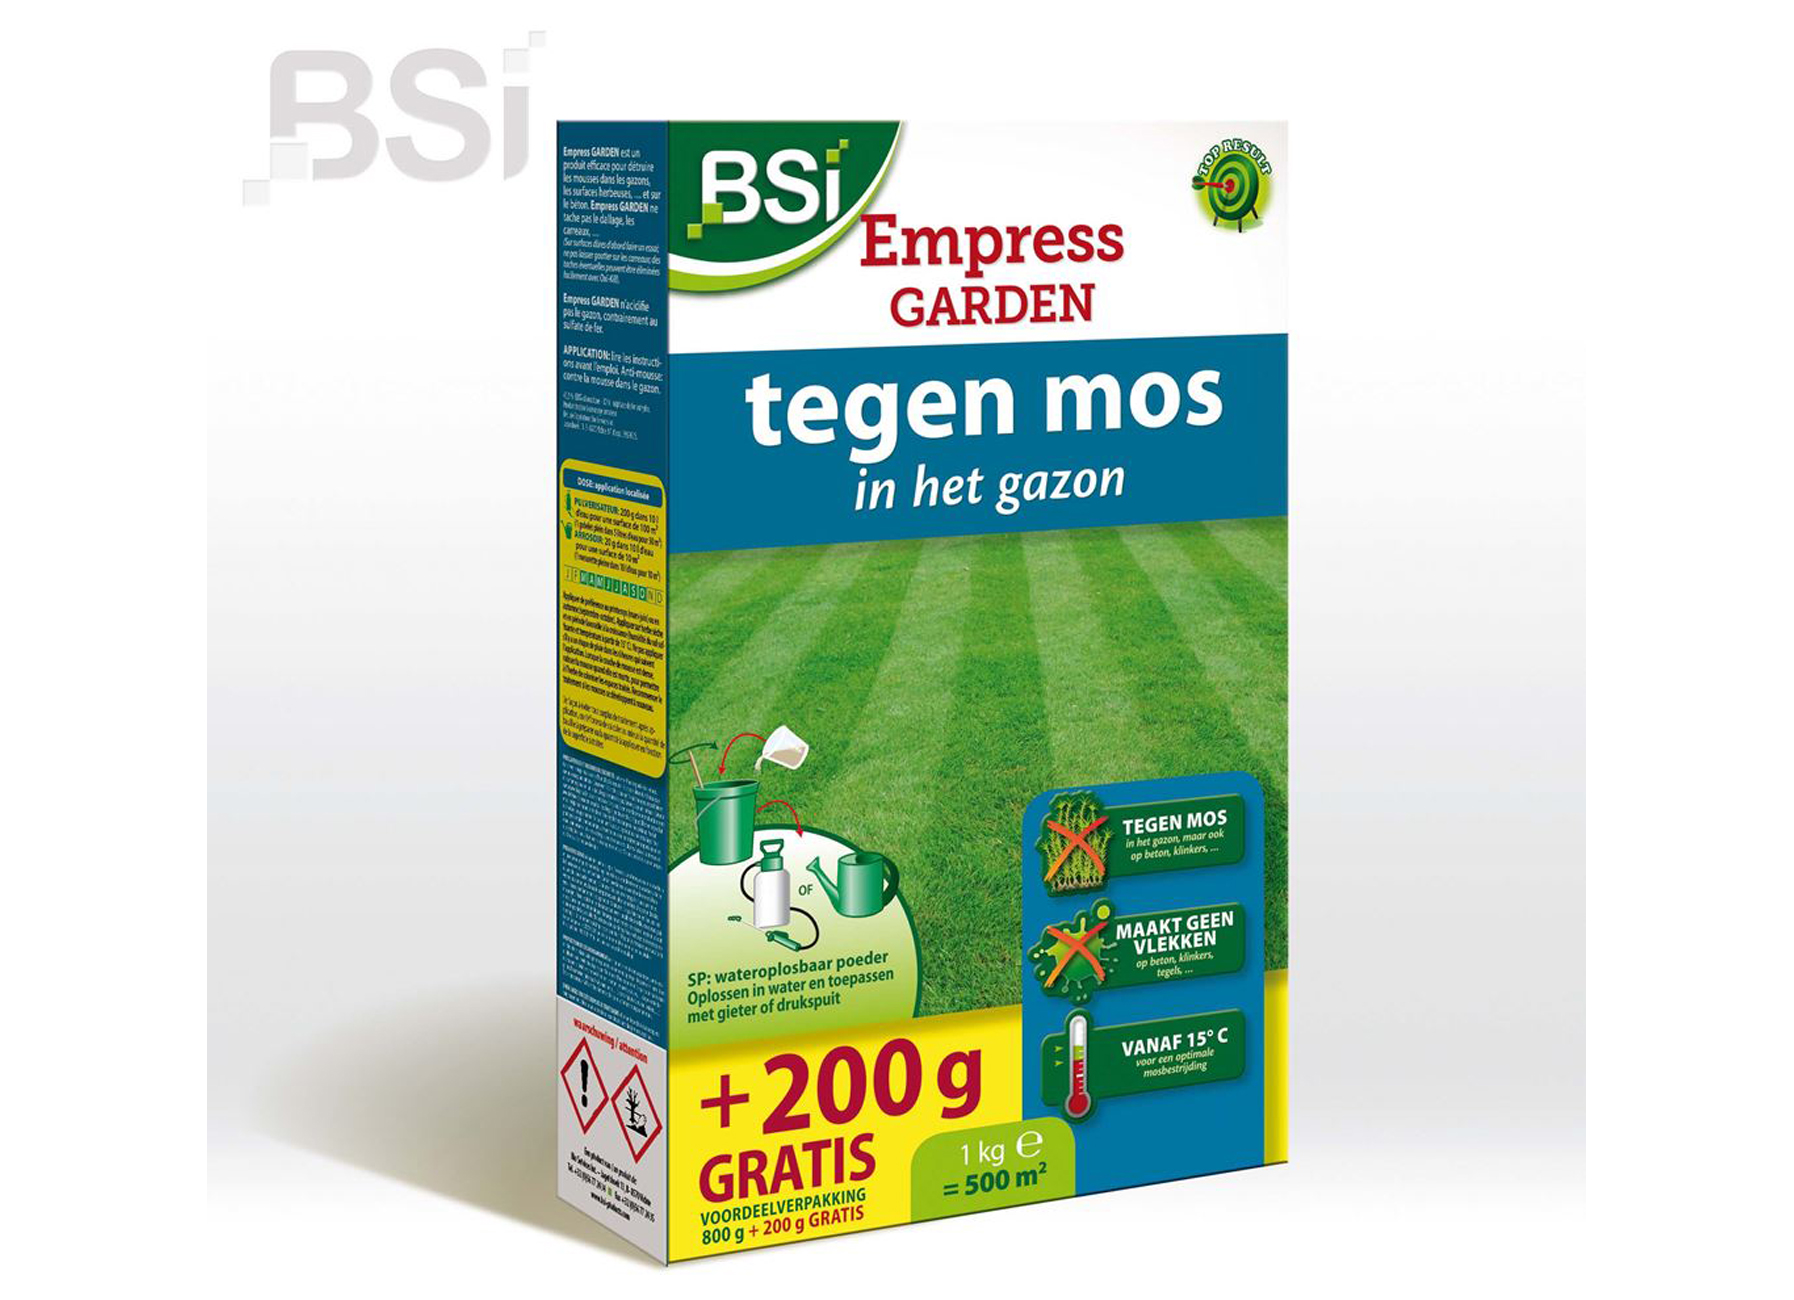 BSI EMPRESS GARDEN 800+200G GRATIS